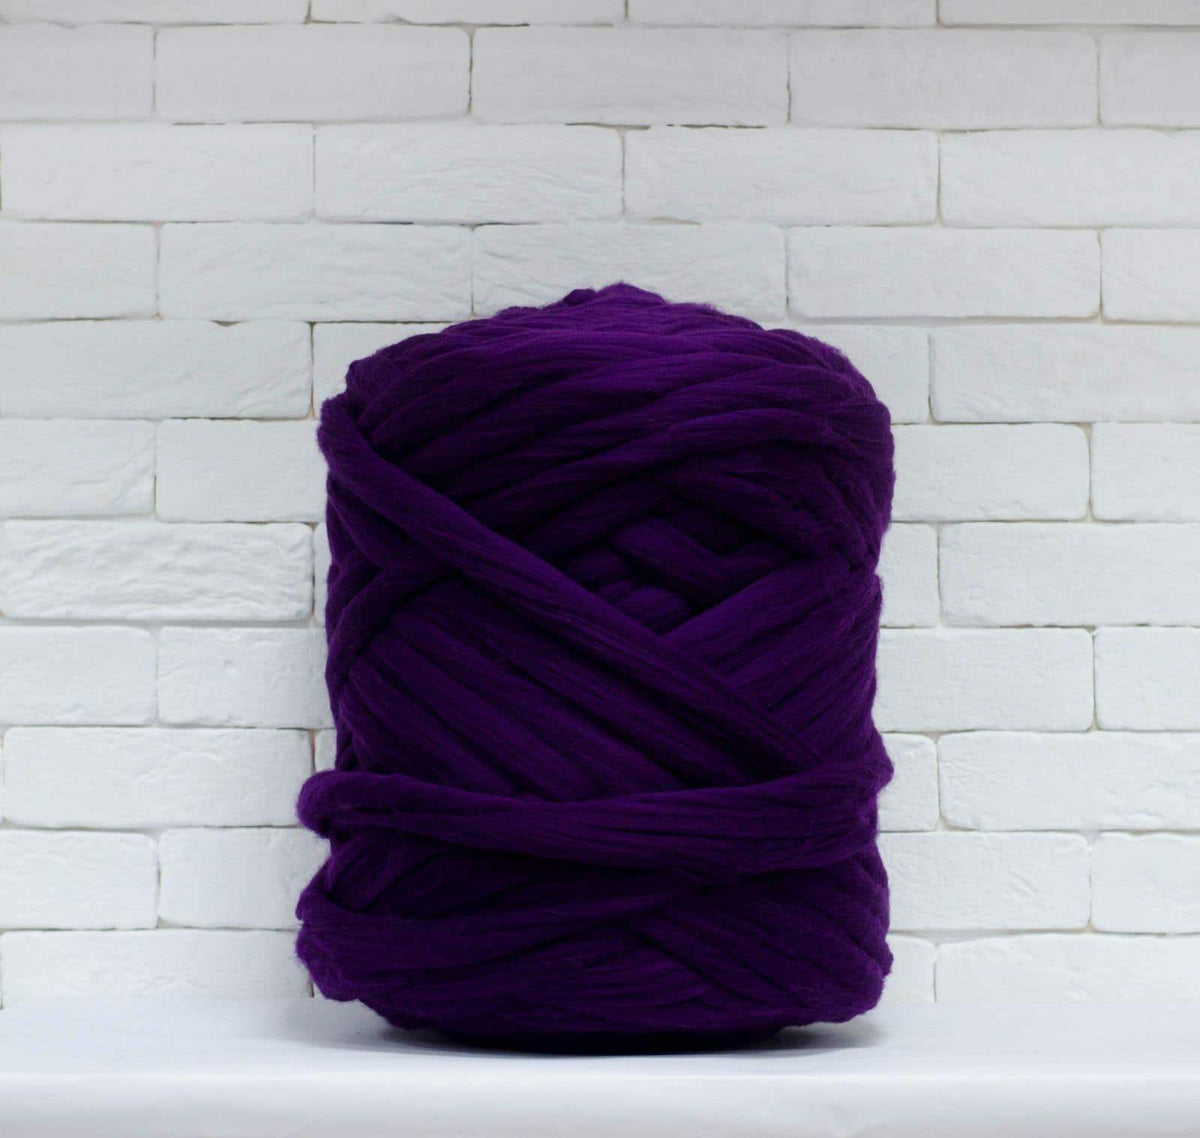 Blush Pink Giant Yarn, Merino Wool, Giant Knitting, DIY Knit Blanket